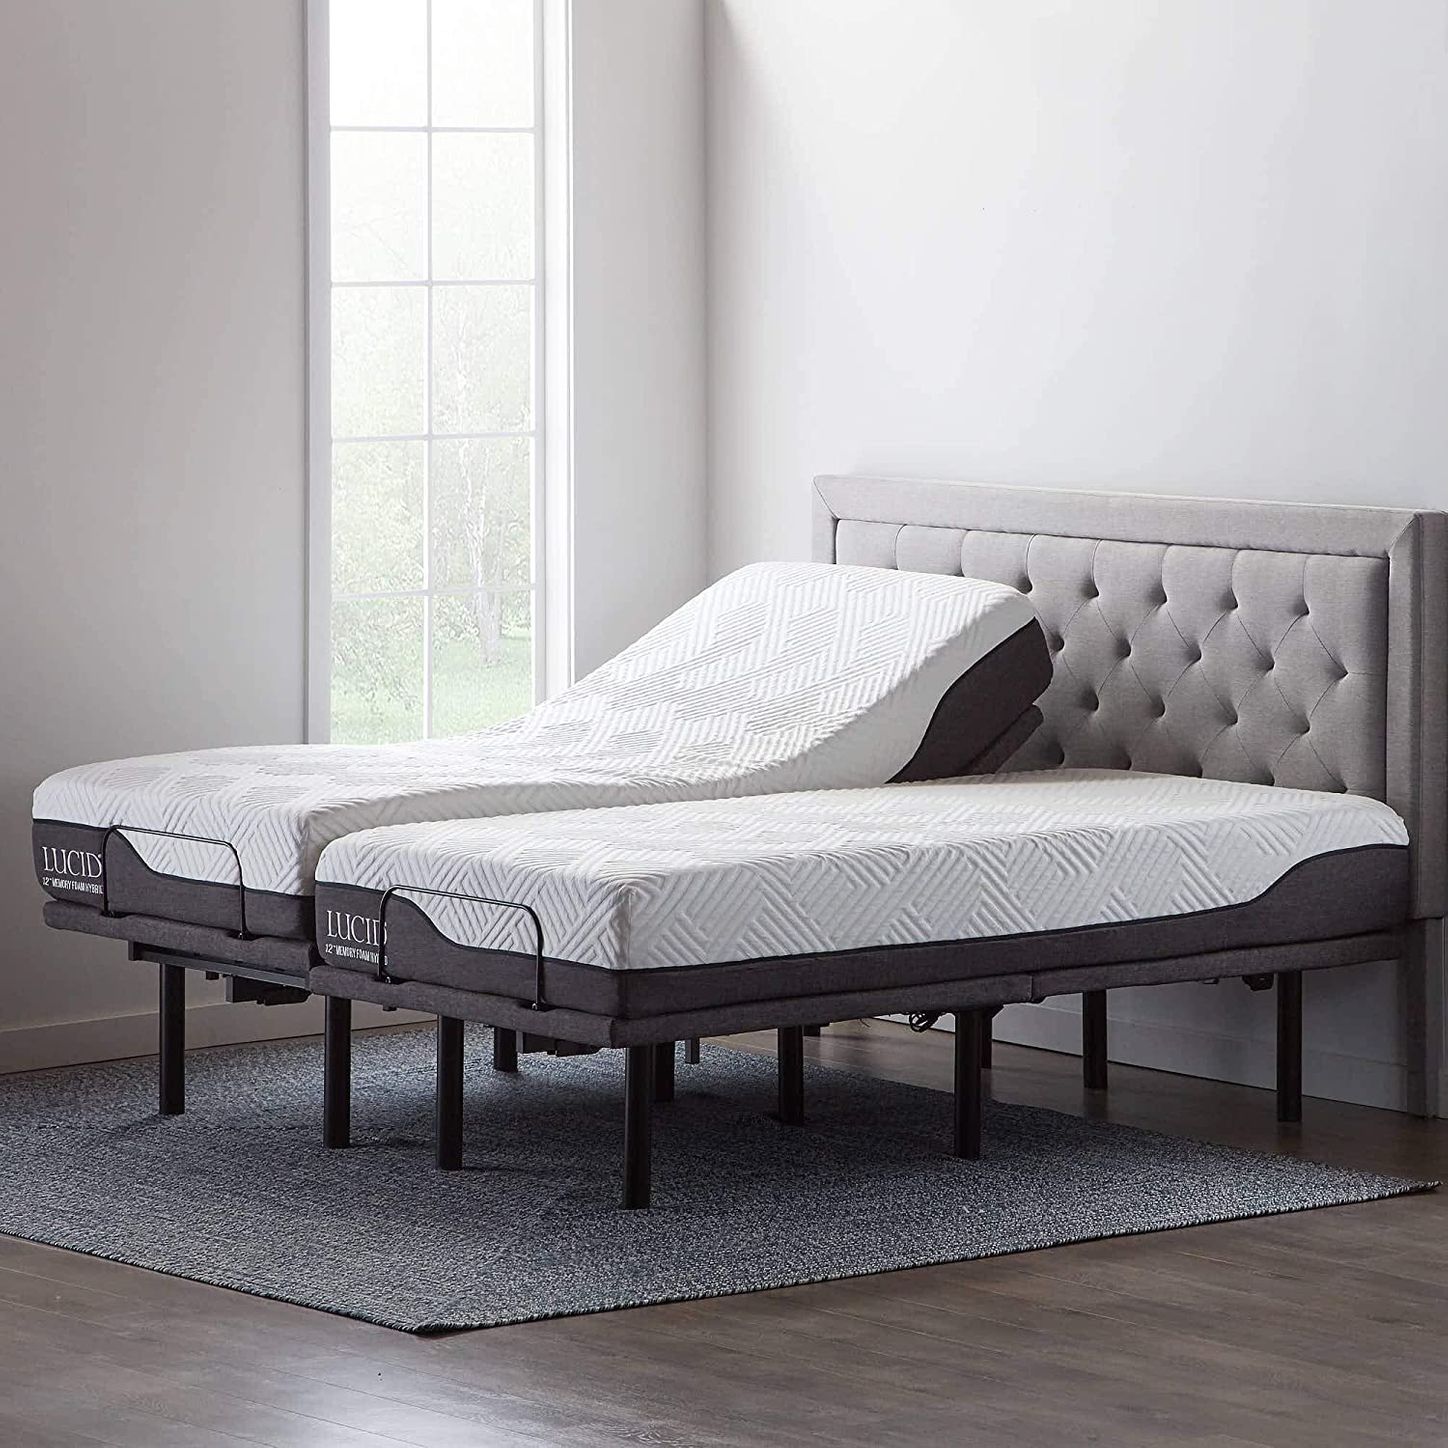 10 Best Adjustable Bed Bases 2021 The, Adjustable Sleep Number Bed Split King